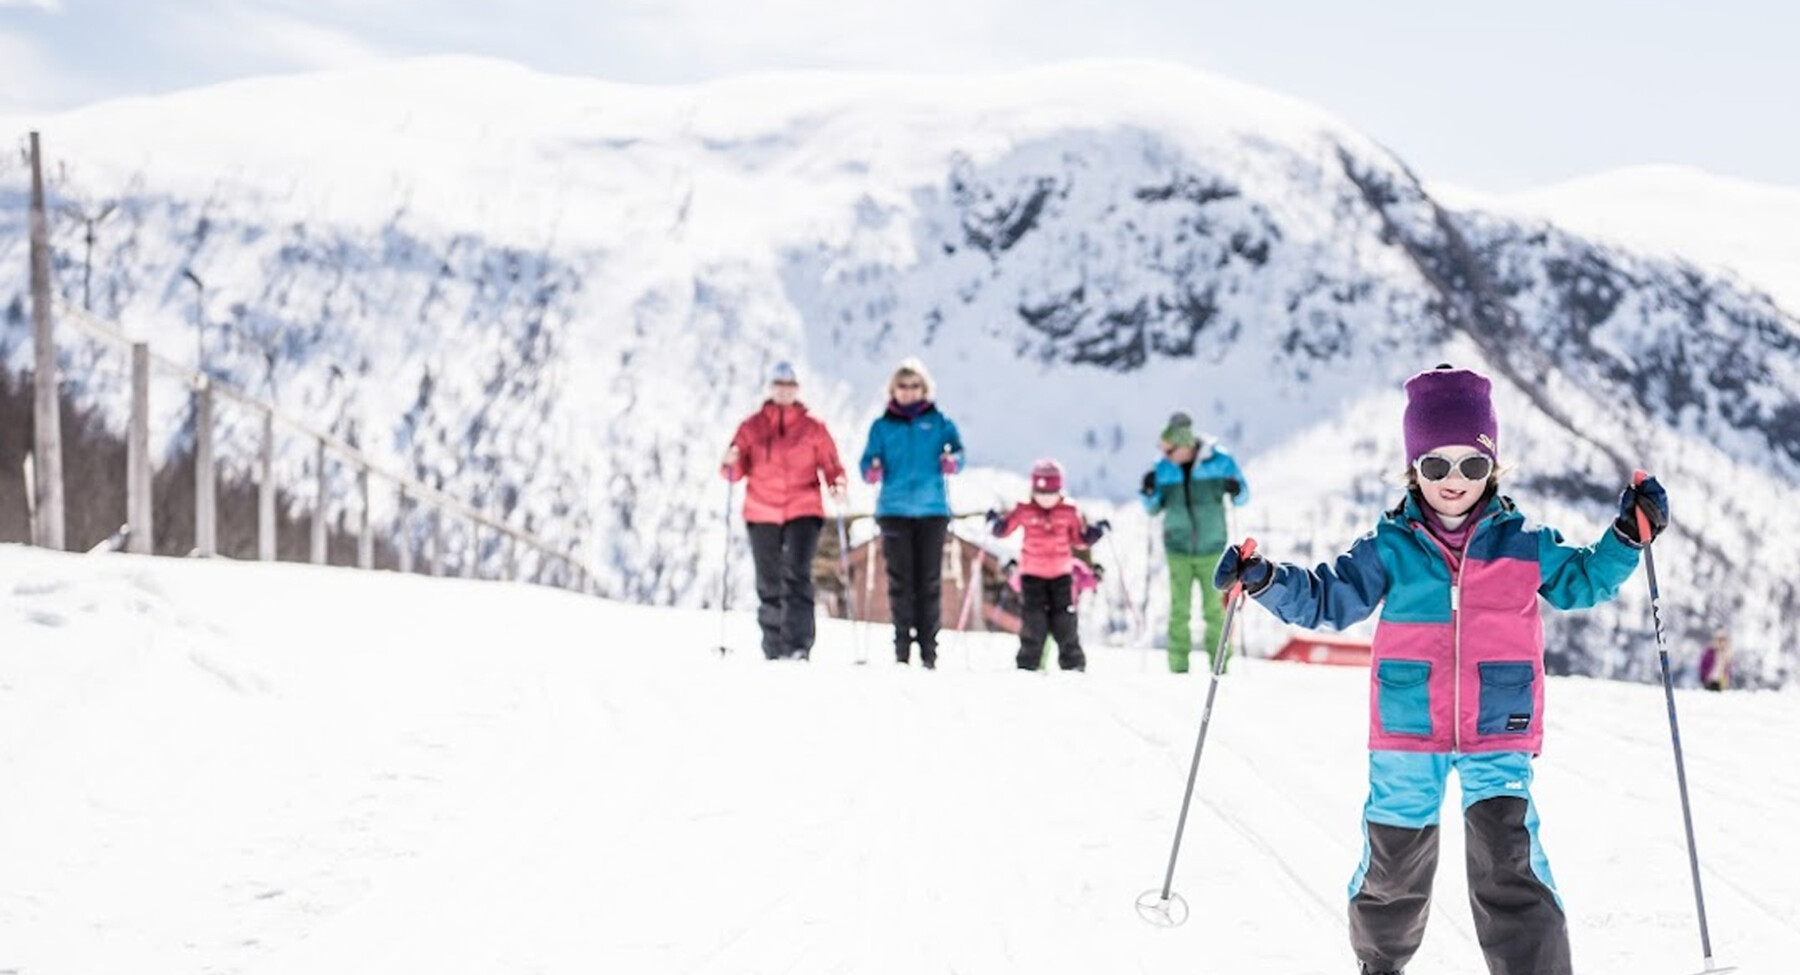 Myrkdalen ski holidays